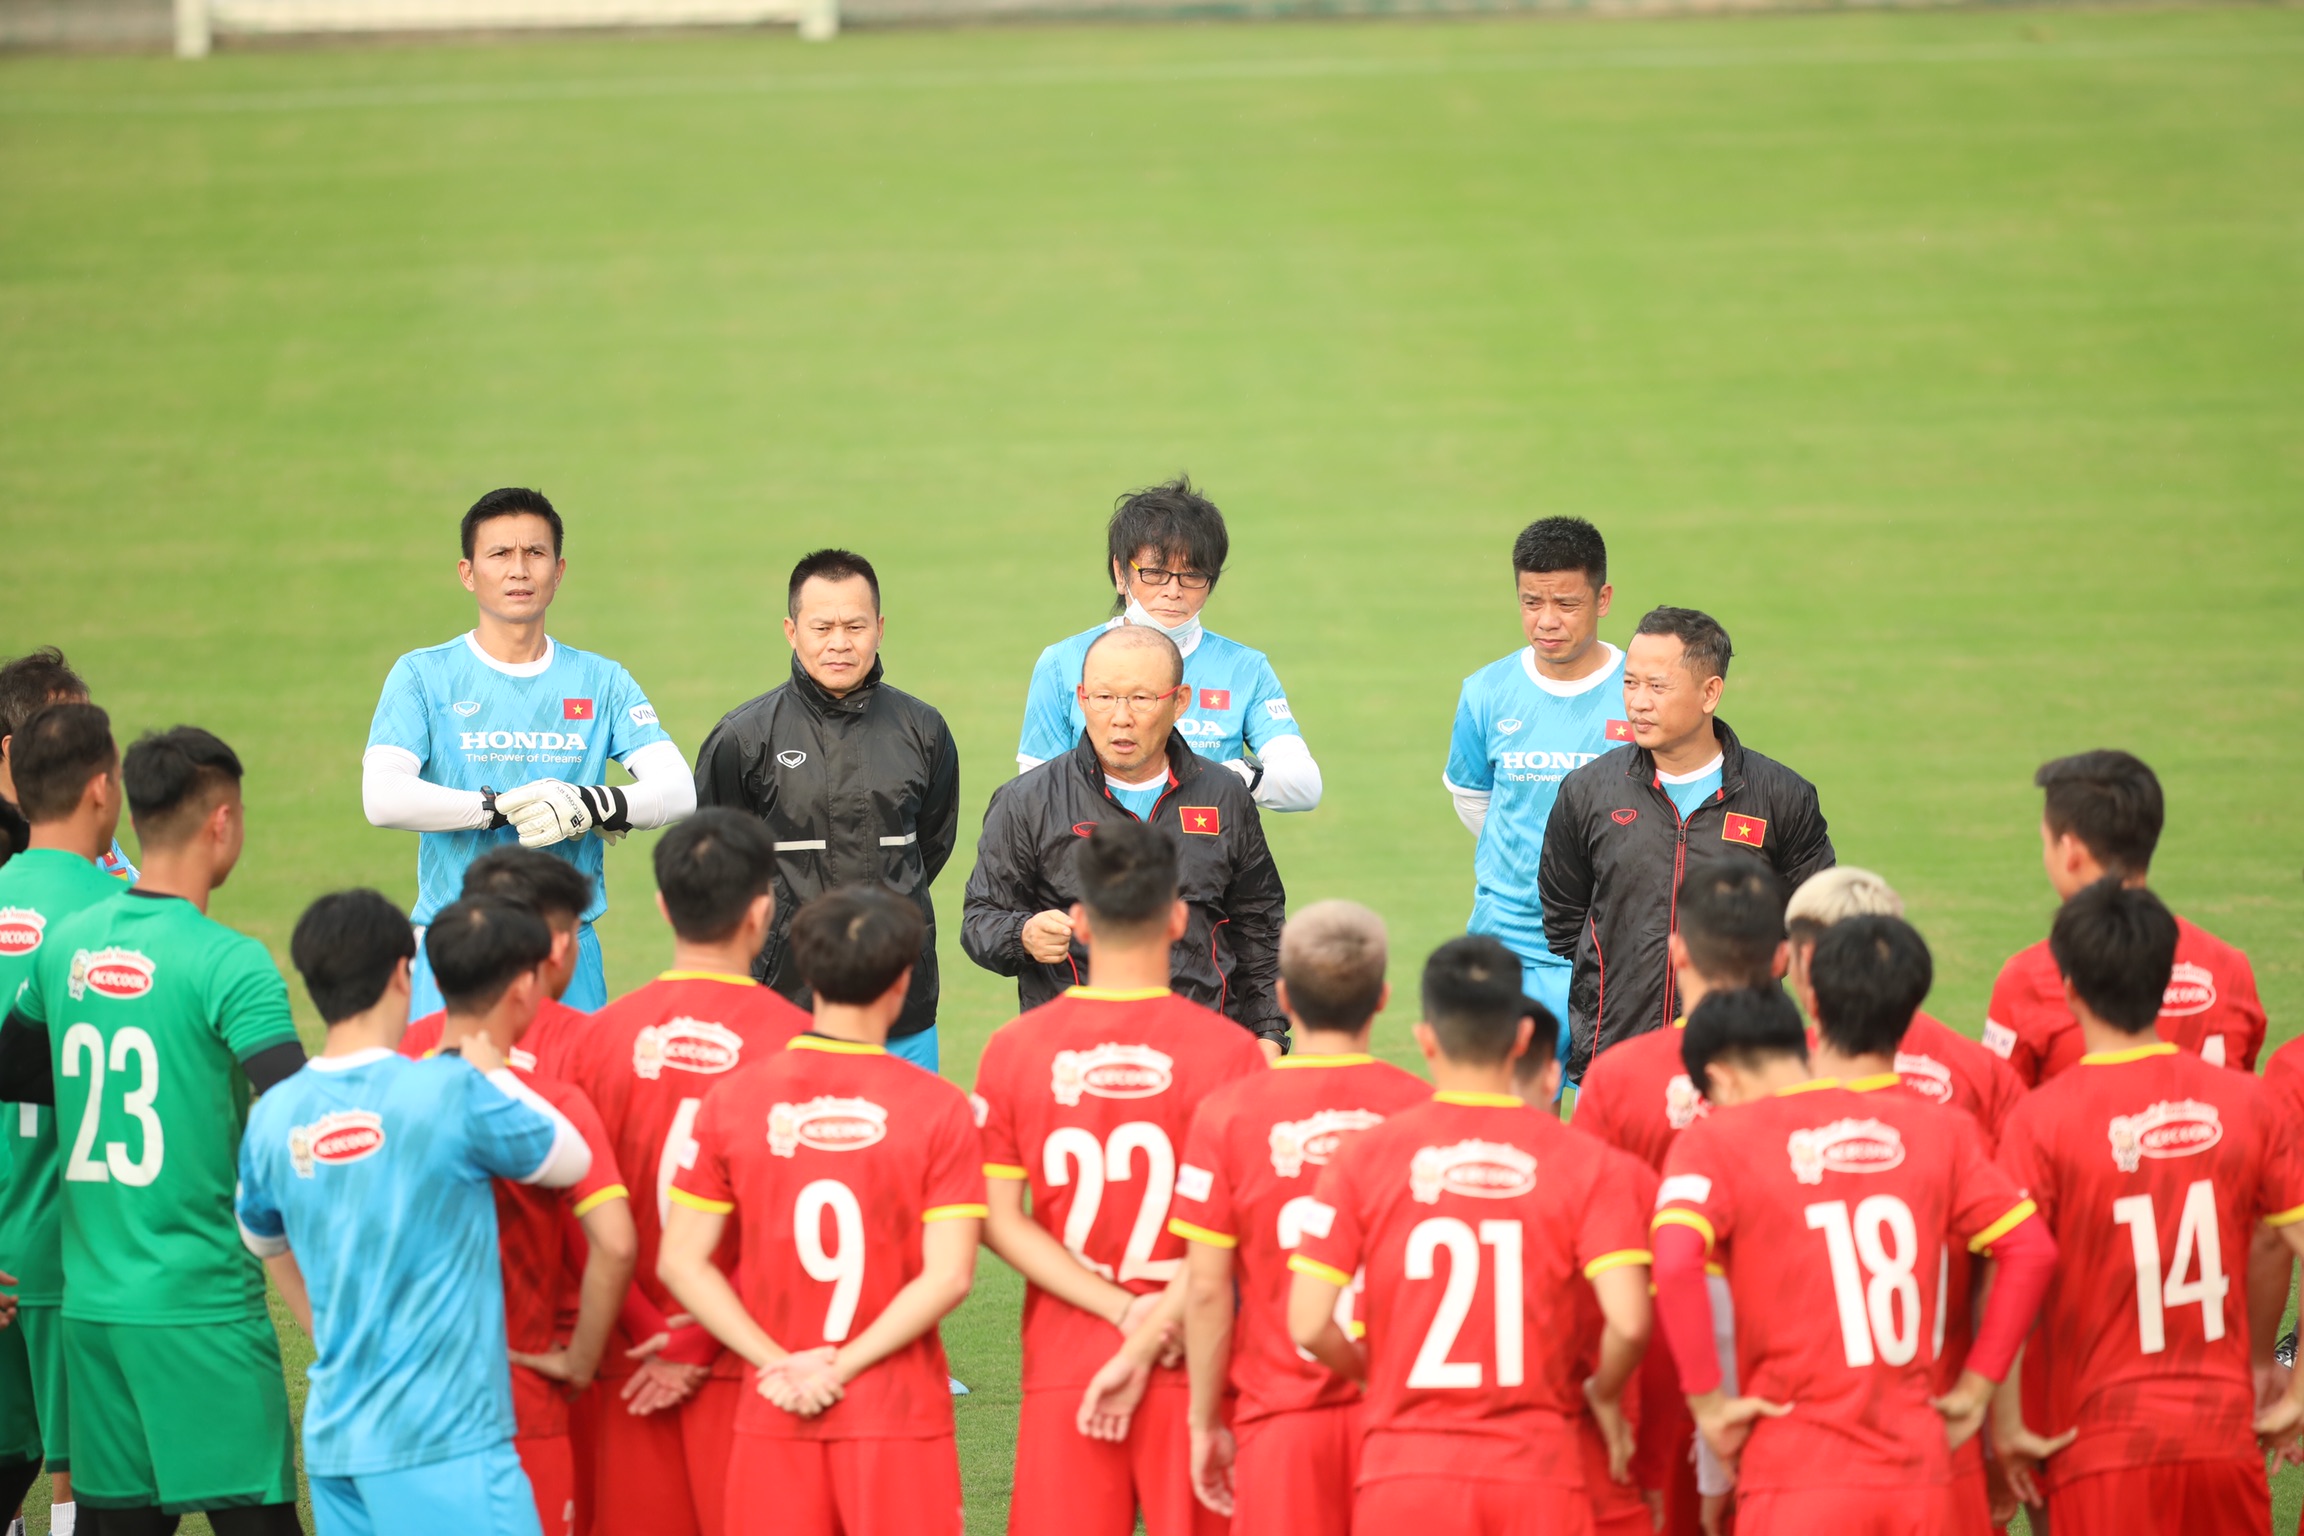 HLV Park Hang-seo chuẩn bị kỹ càng từ chuyên môn đến sức khỏe cho các cầu thủ